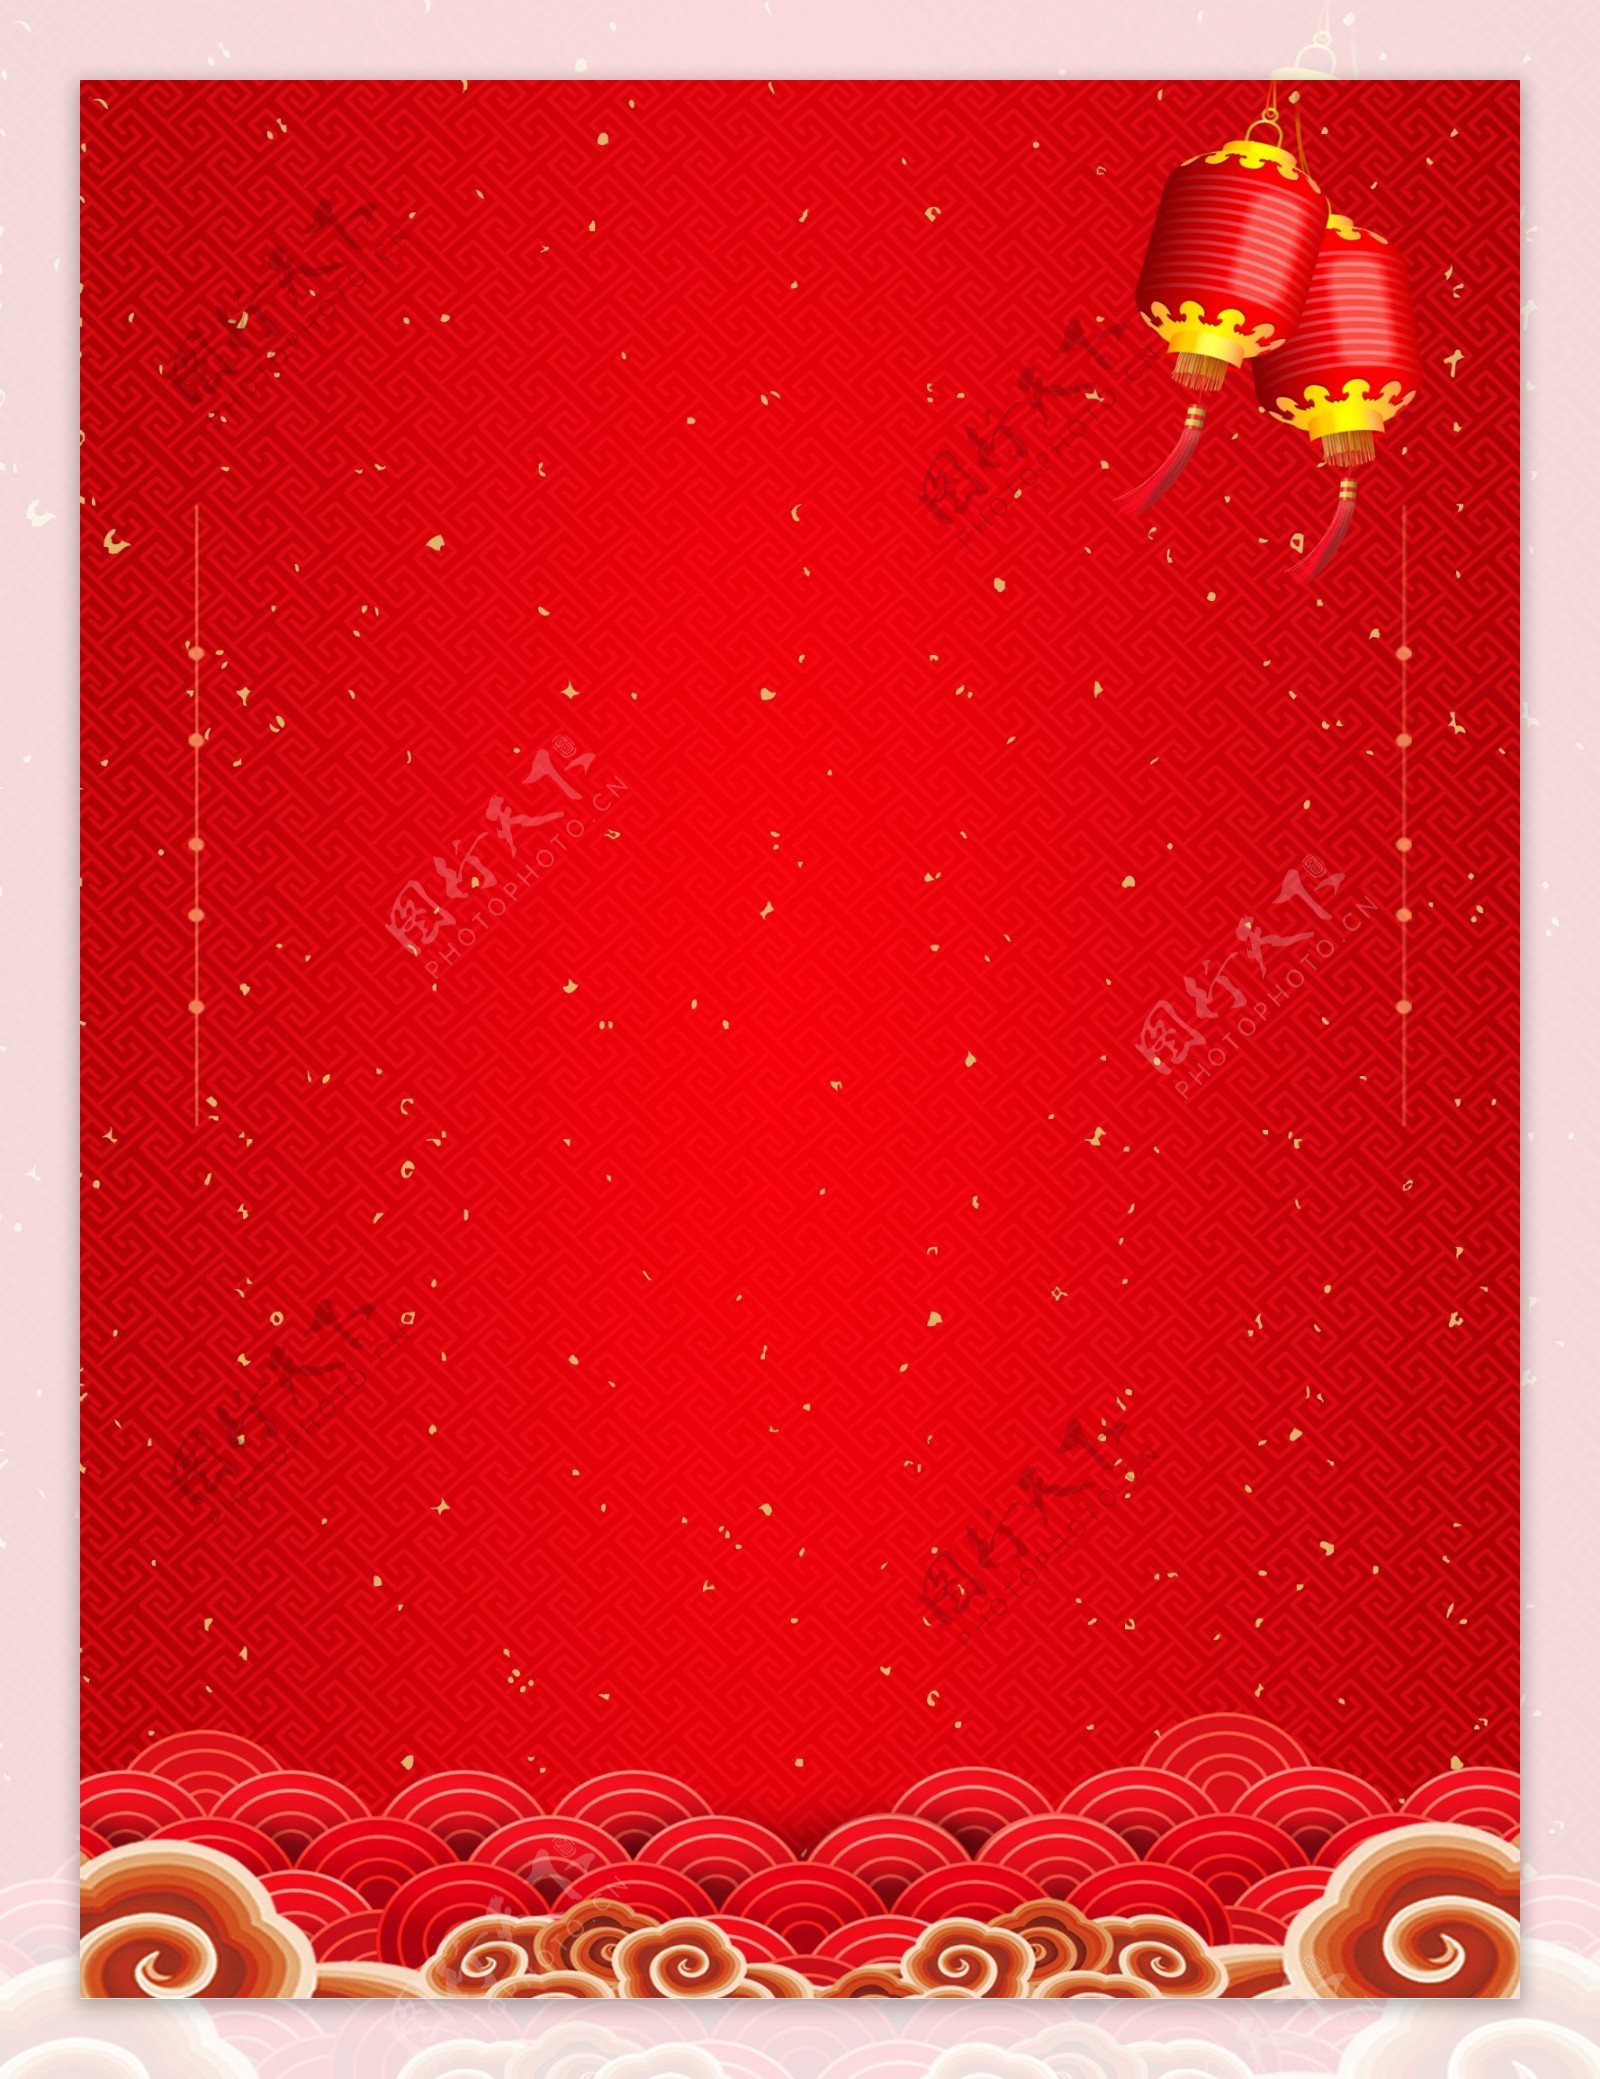 中国风红色灯笼祥云背景设计